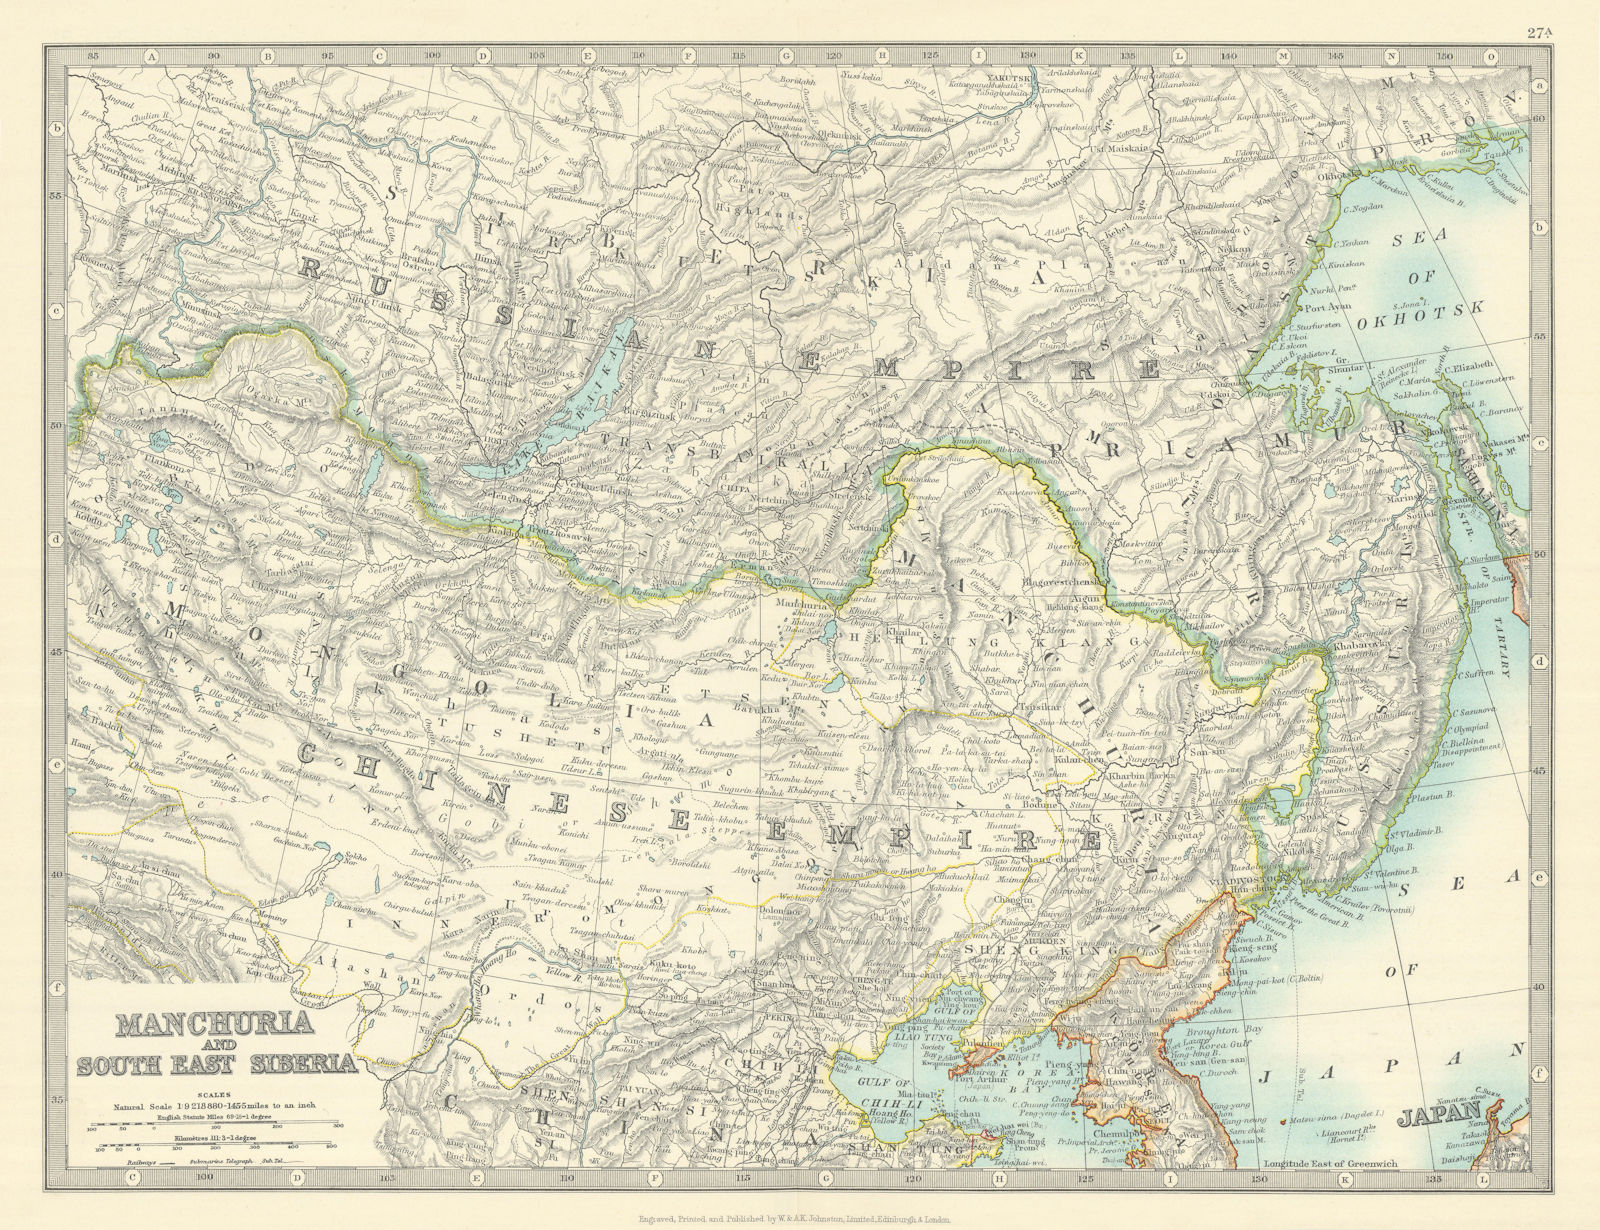 MANCHURIA & SOUTH EAST SIBERIA Mongolia China Russia East Asia JOHNSTON 1913 map